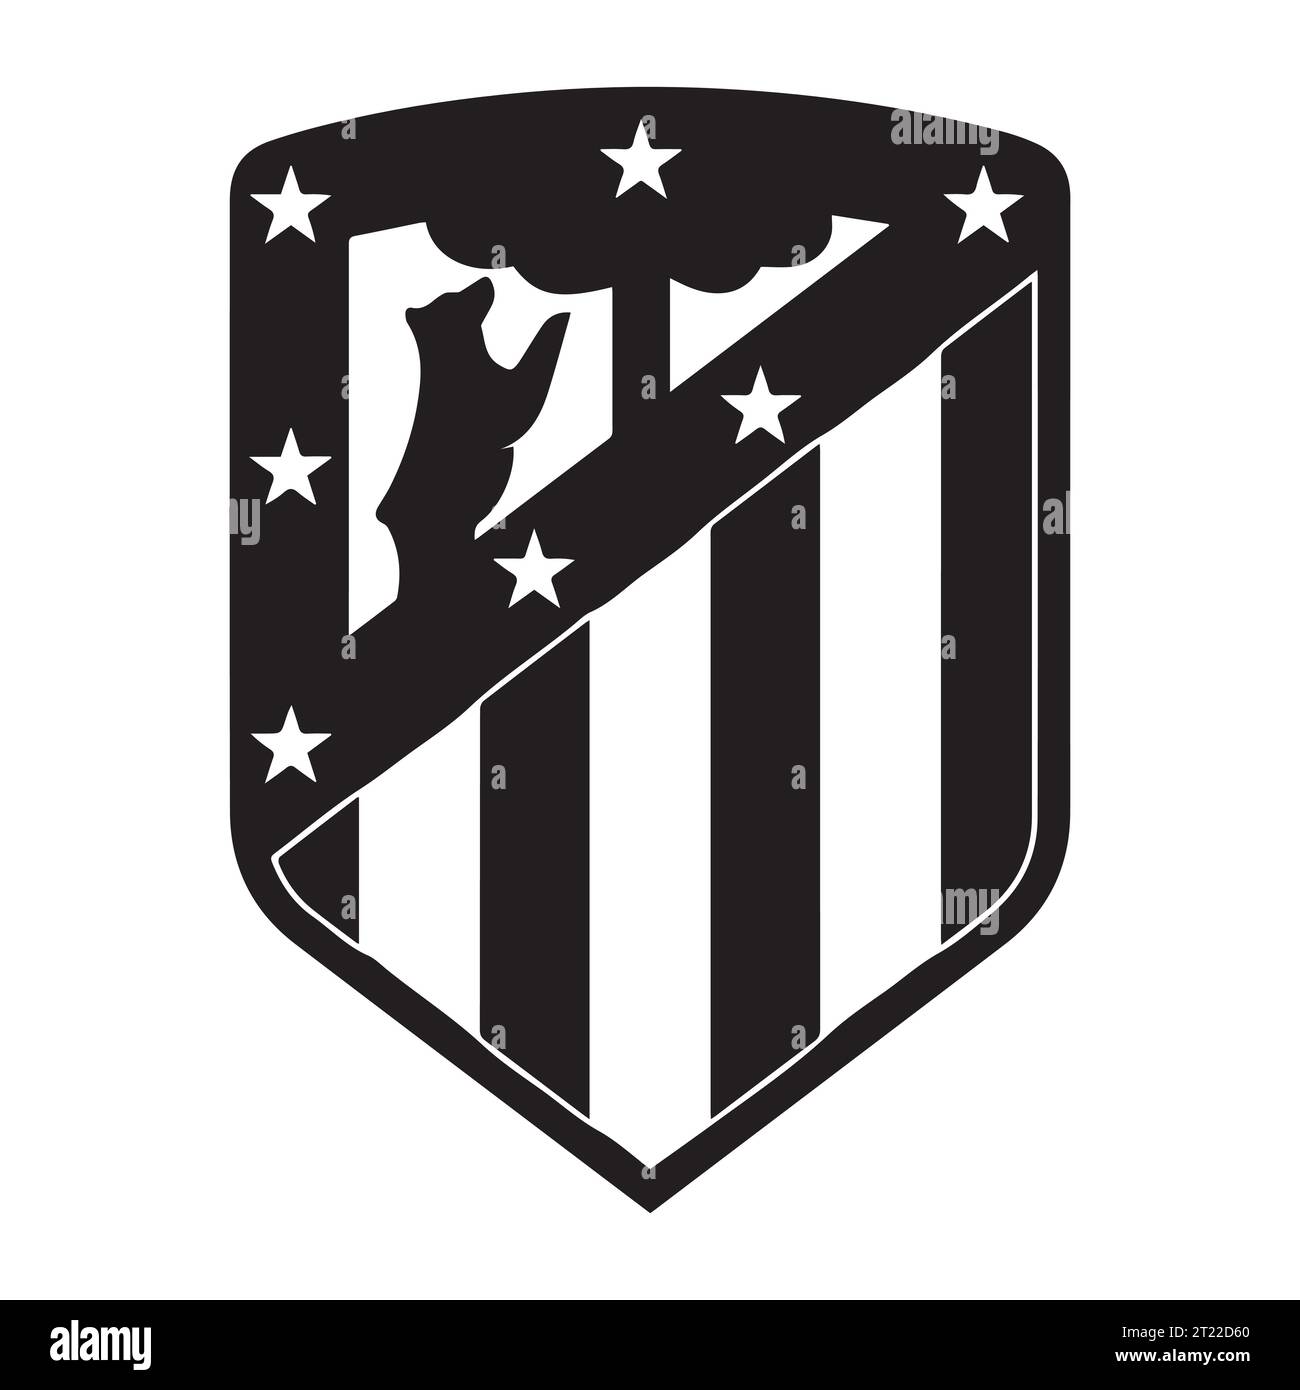 Atletico Madrid Logo bianco e nero squadra di calcio professionistica spagnola, illustrazione vettoriale immagine astratta in bianco e nero modificabile Illustrazione Vettoriale